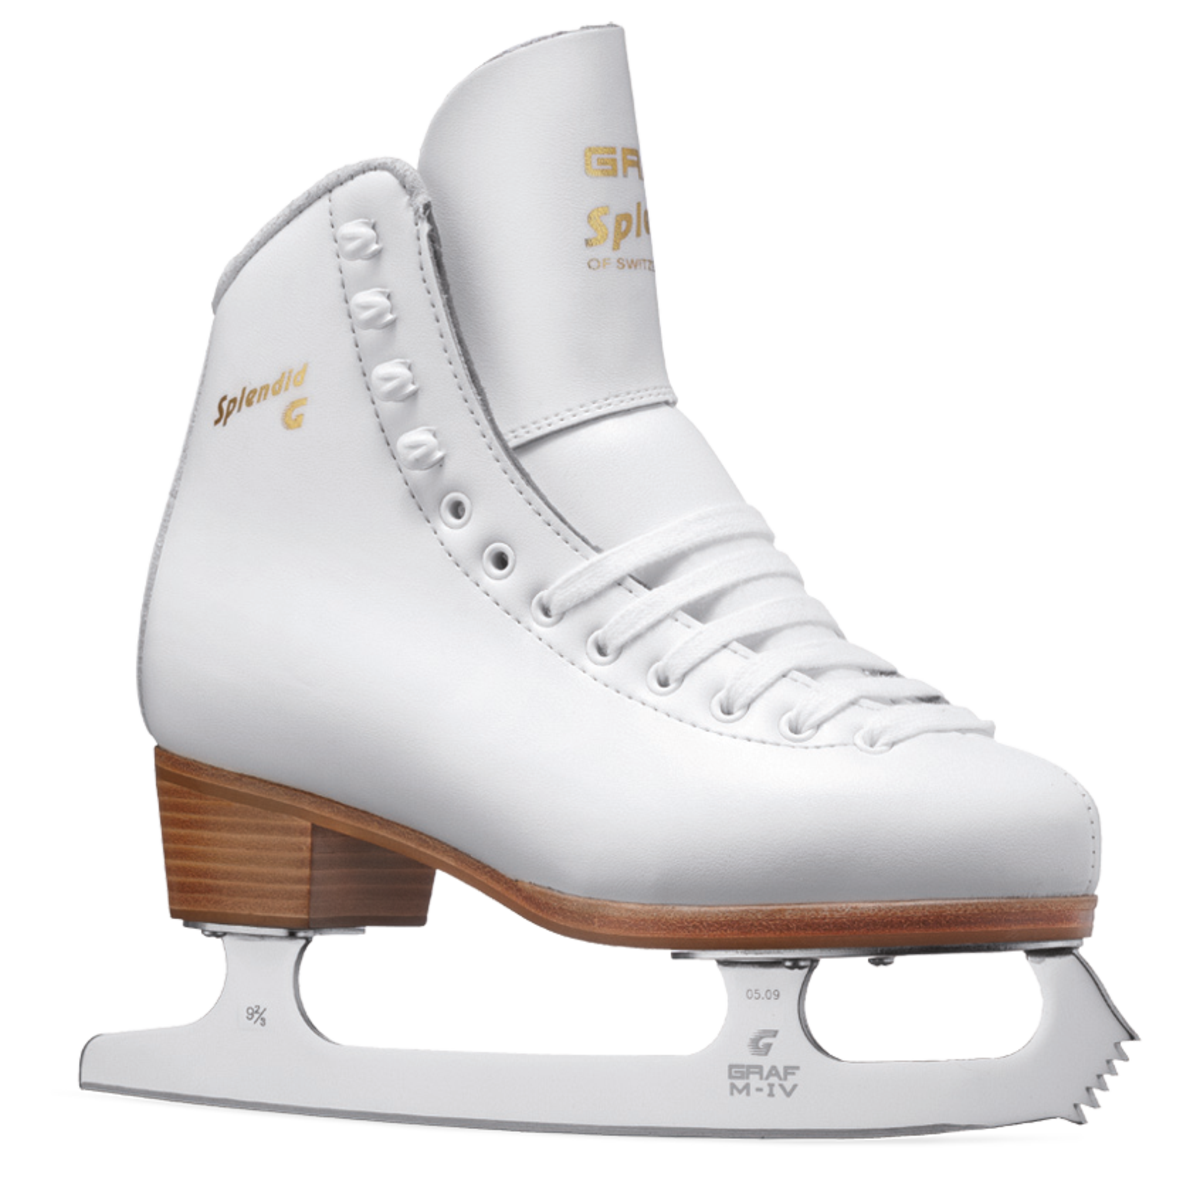 Chaussures de patinage de glace blanc Télécharger limage PNG